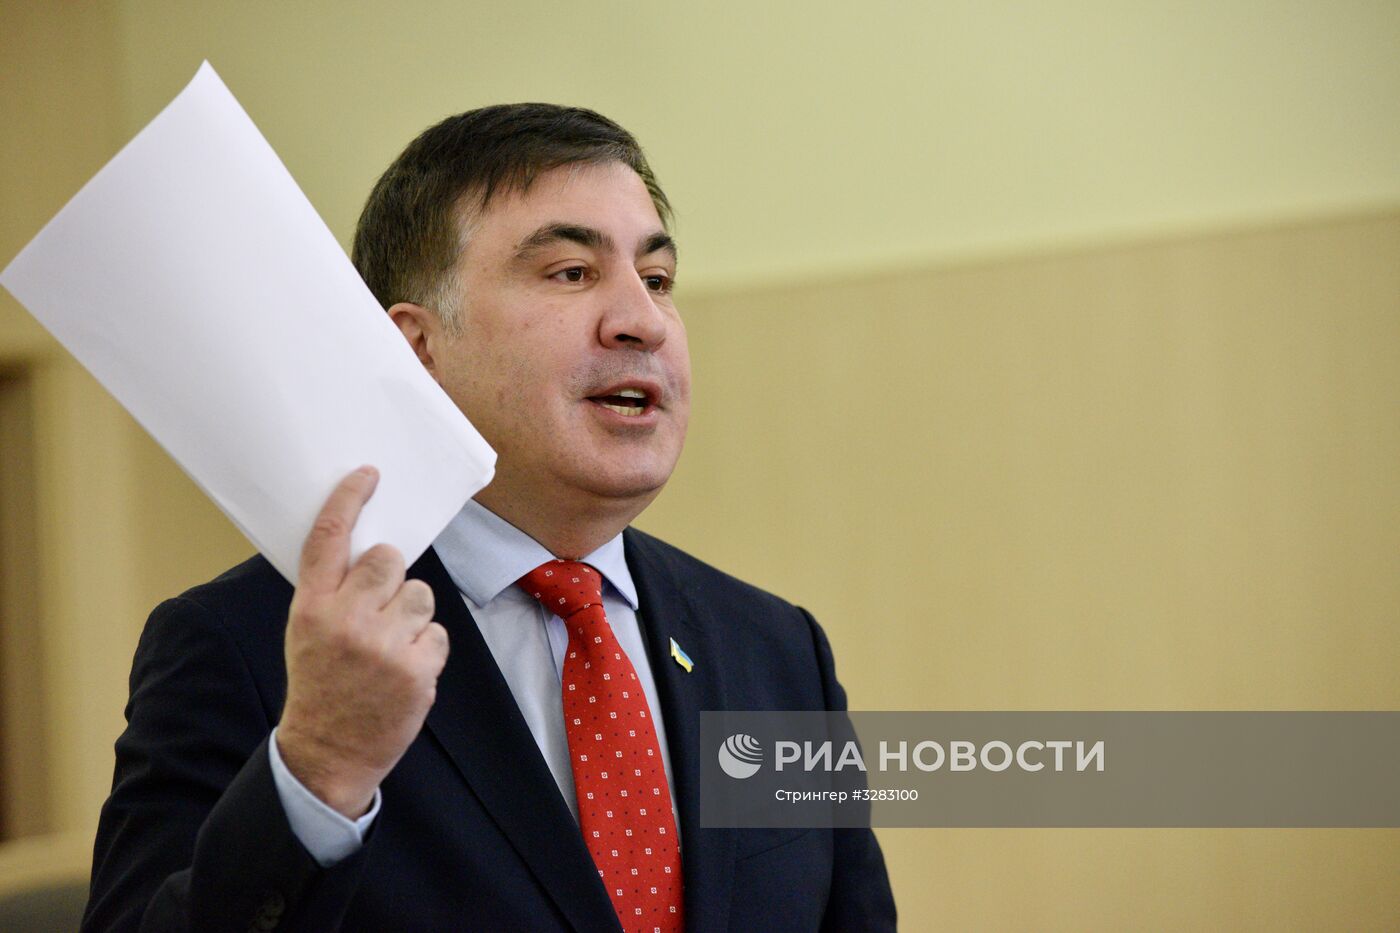 Суд в Киеве рассмотрел иск М. Саакашвили против лишения его украинского гражданства